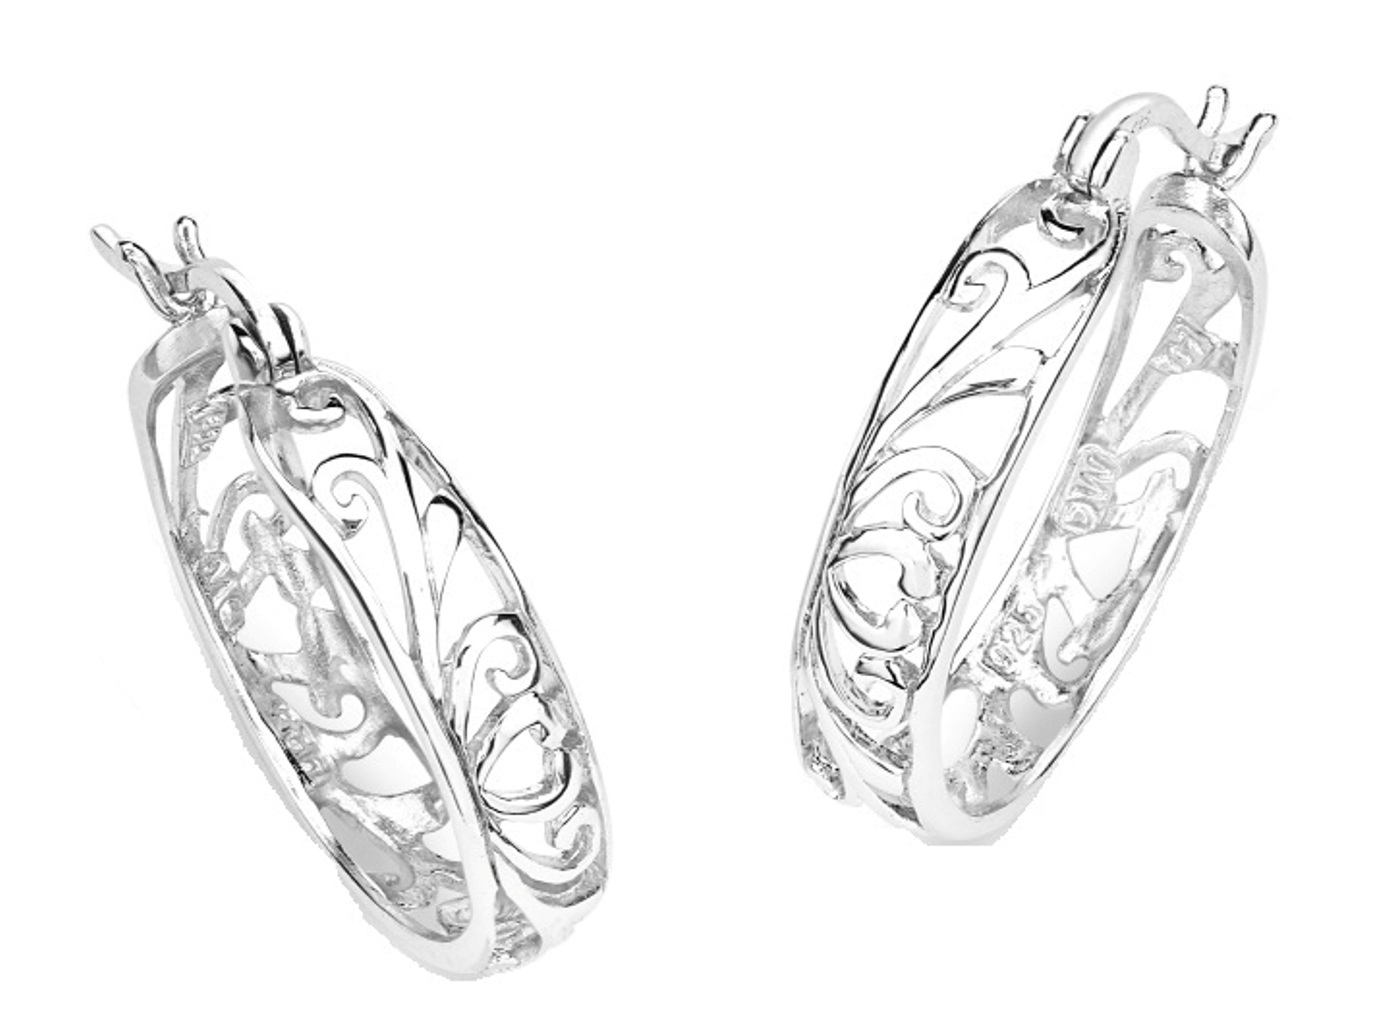 Filigree Design Hoop Earrings, Rhodium Plated Sterling Silver